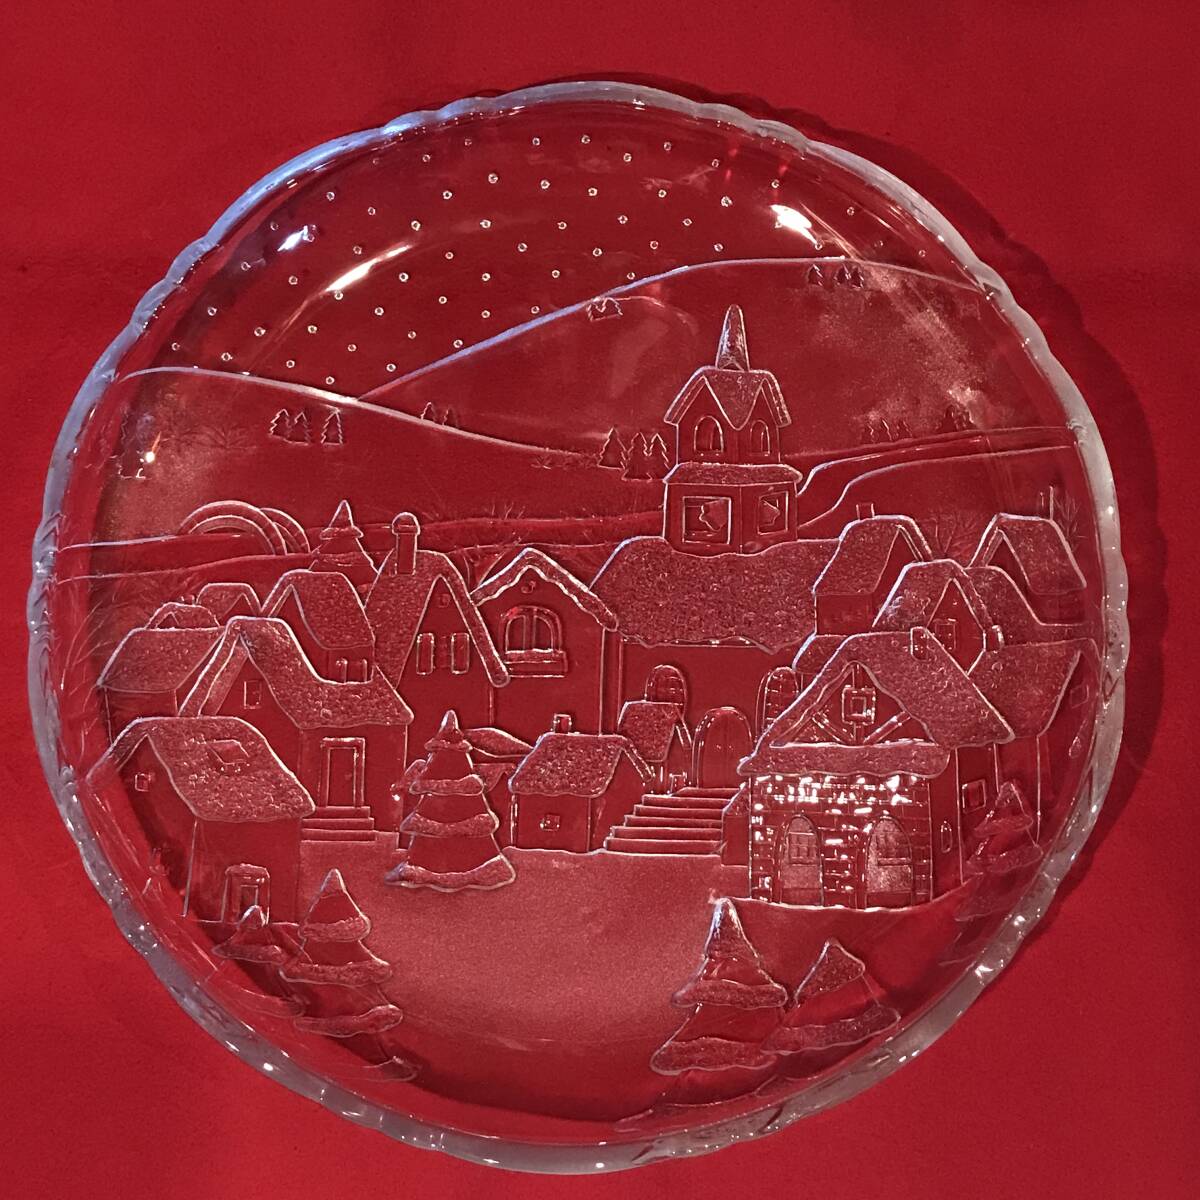 A7431●ガラス製 大皿/盛皿 メルヘン クリスマス 雪景色 雪の町 パーティー 約φ36×4㎝ 未使用品 長期保管上のスレキズ小汚れなどあり_画像1